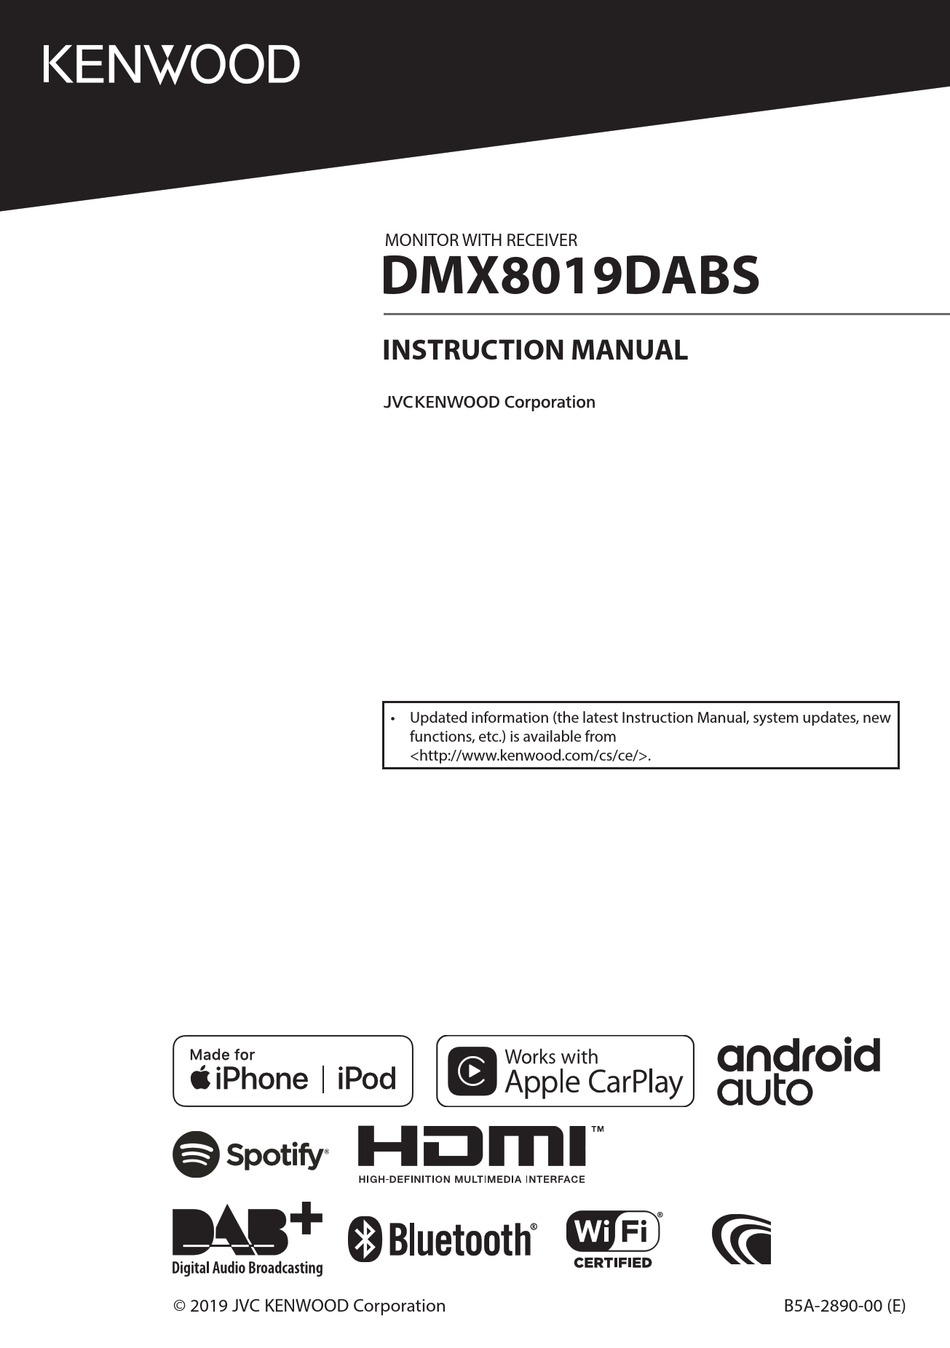 Kenwood Dmx8019dabs Instruction Manual Pdf Download Manualslib